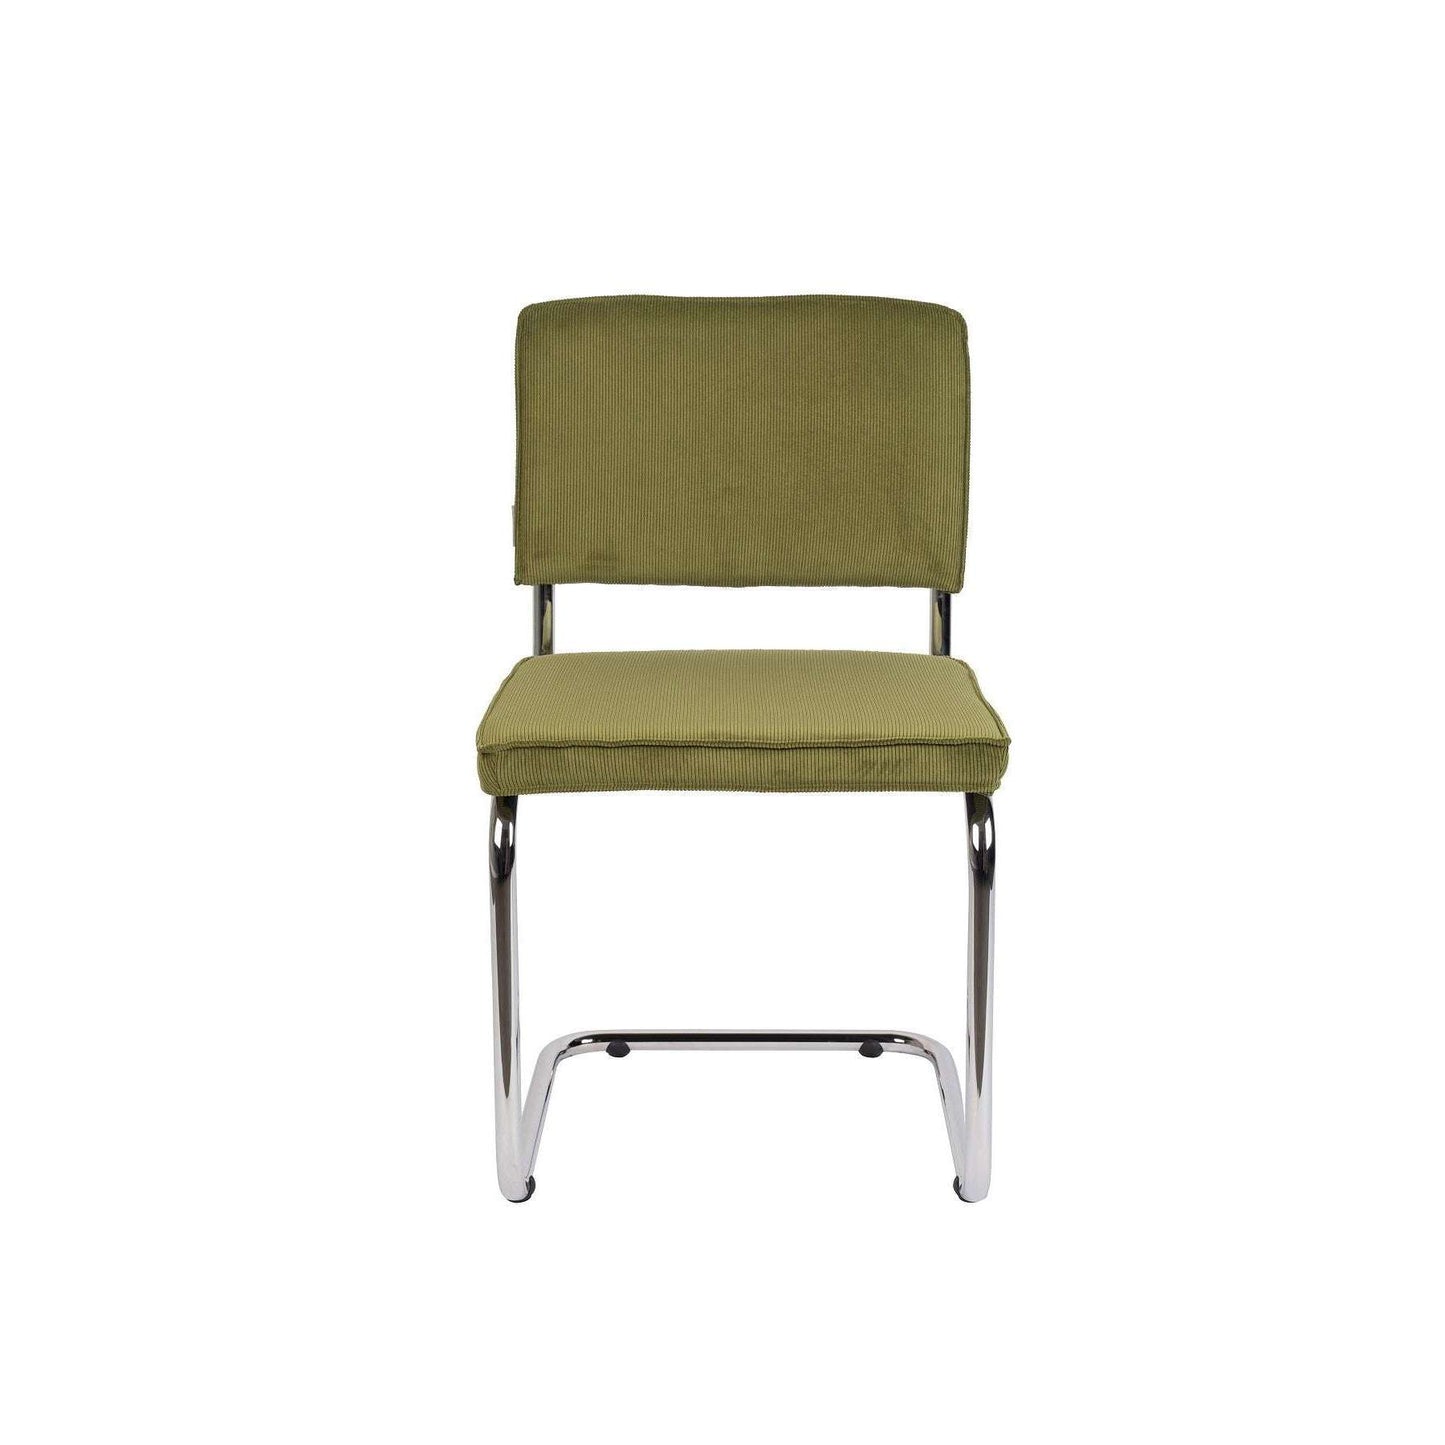 Gezamenlijke selectie Voorzieningen Dageraad Zuiver stoel ridge rib groen 50 x 48 x 85 cm – Selinni